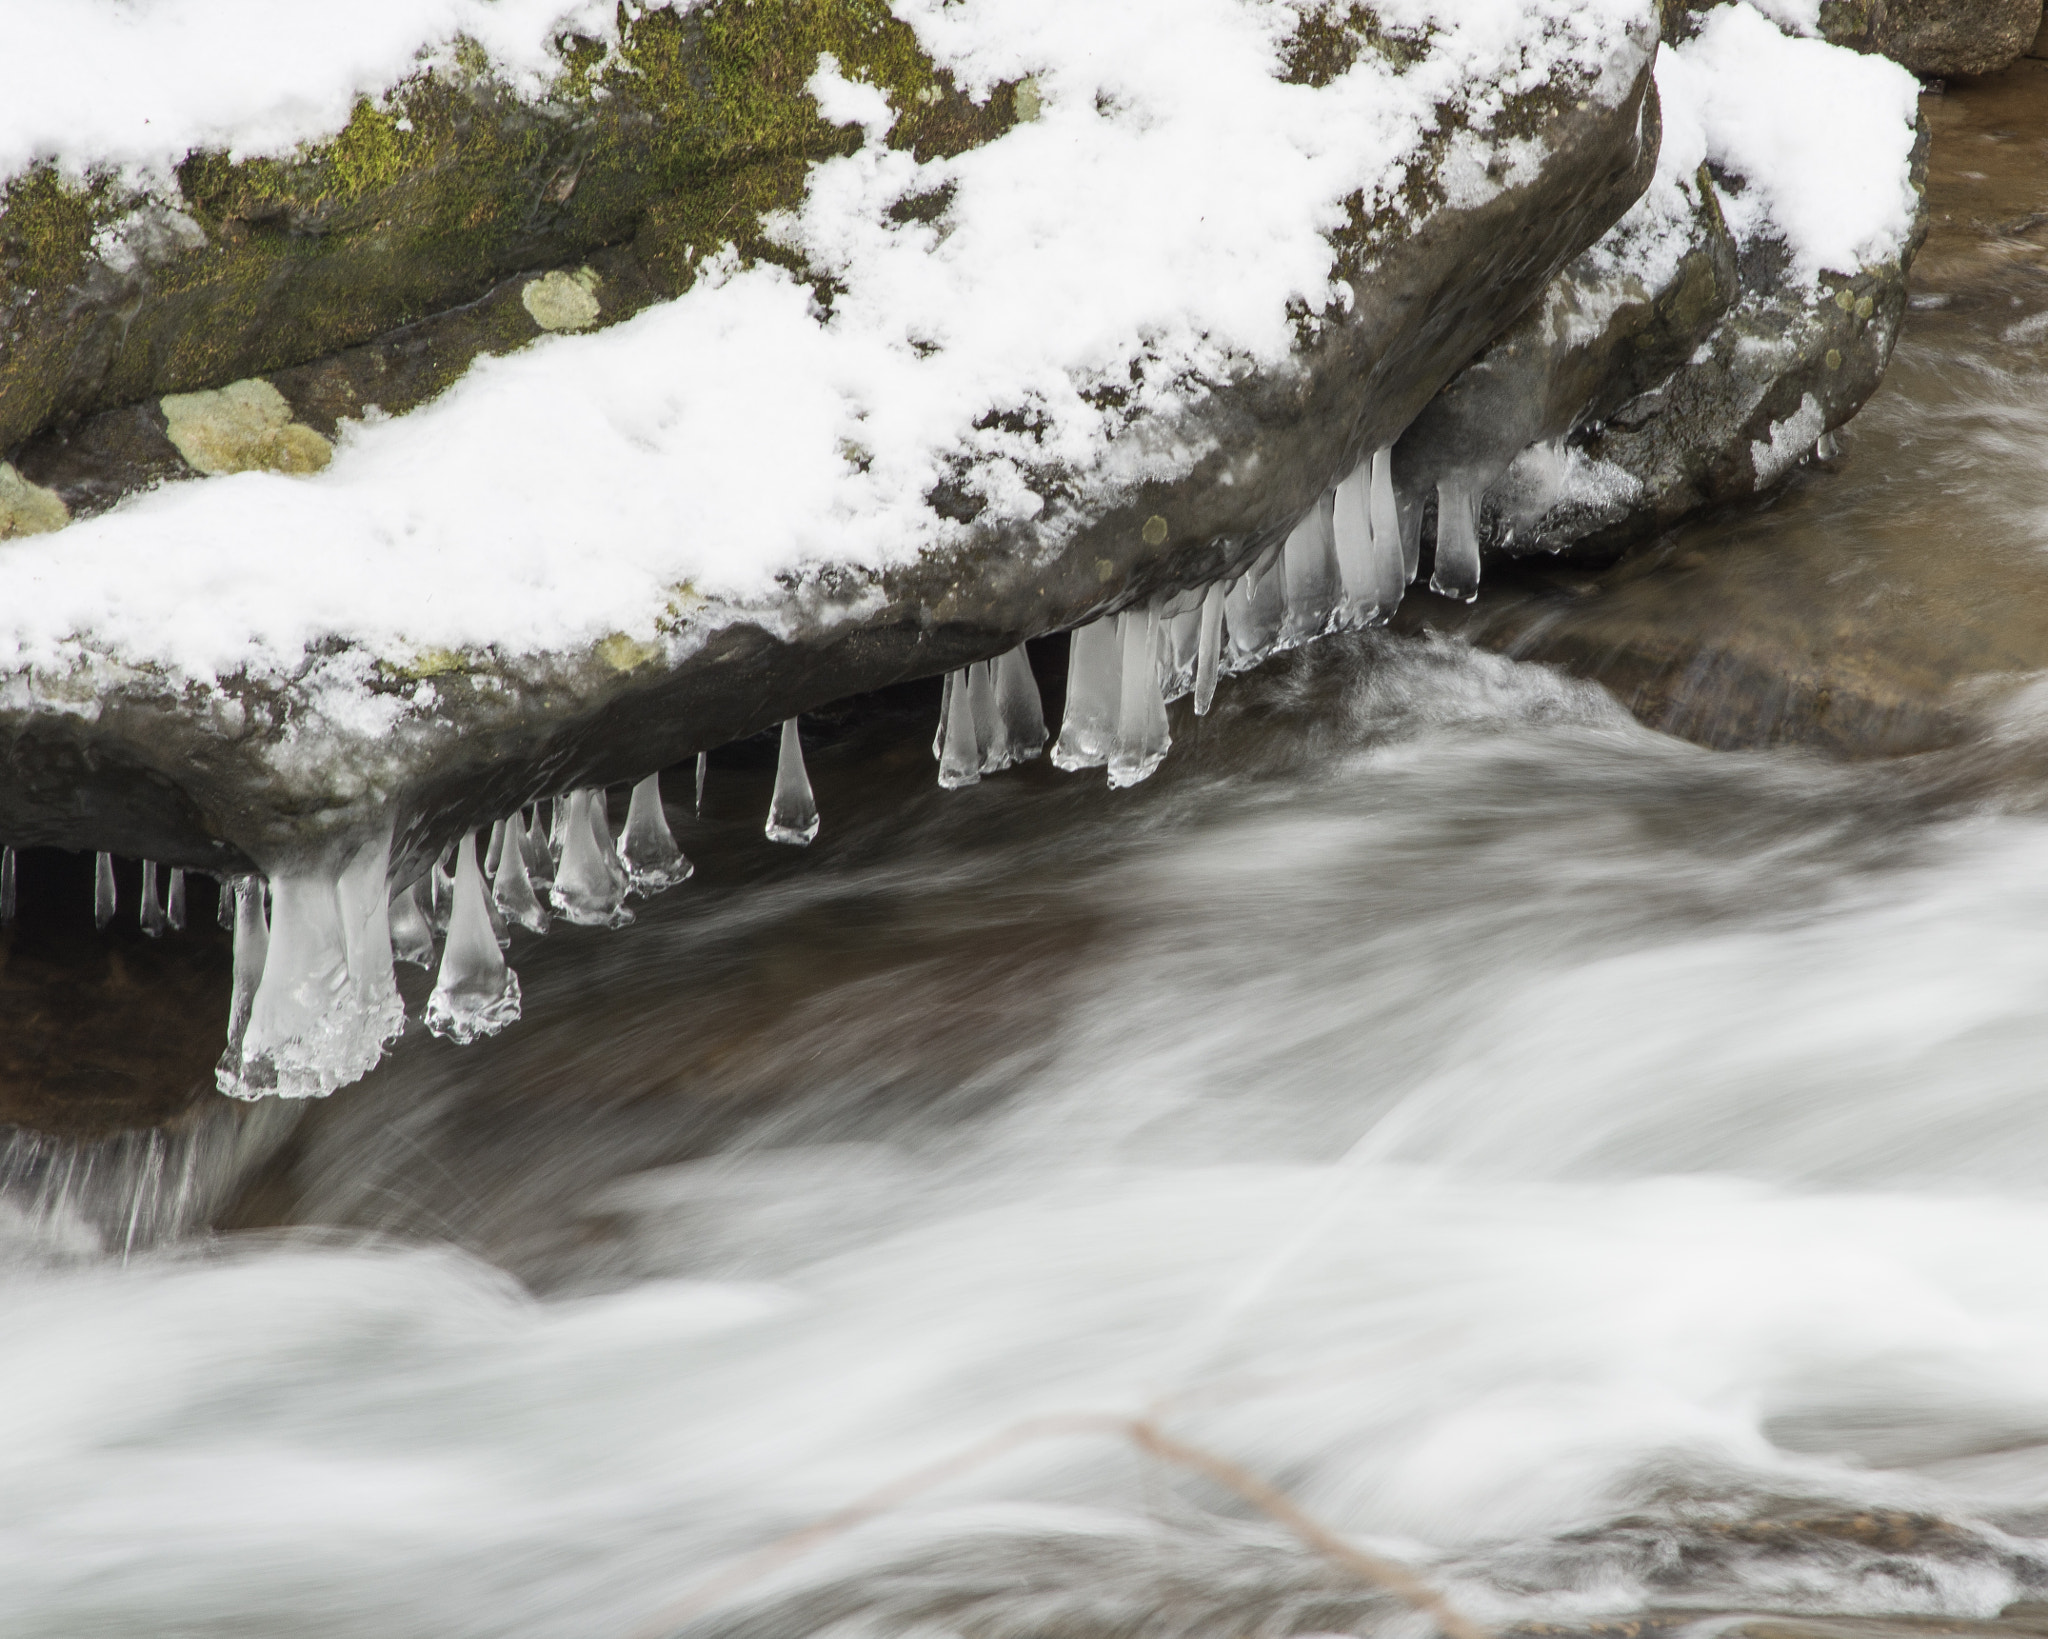 AF Nikkor 70-210mm f/4-5.6 sample photo. Last ice on creek photography